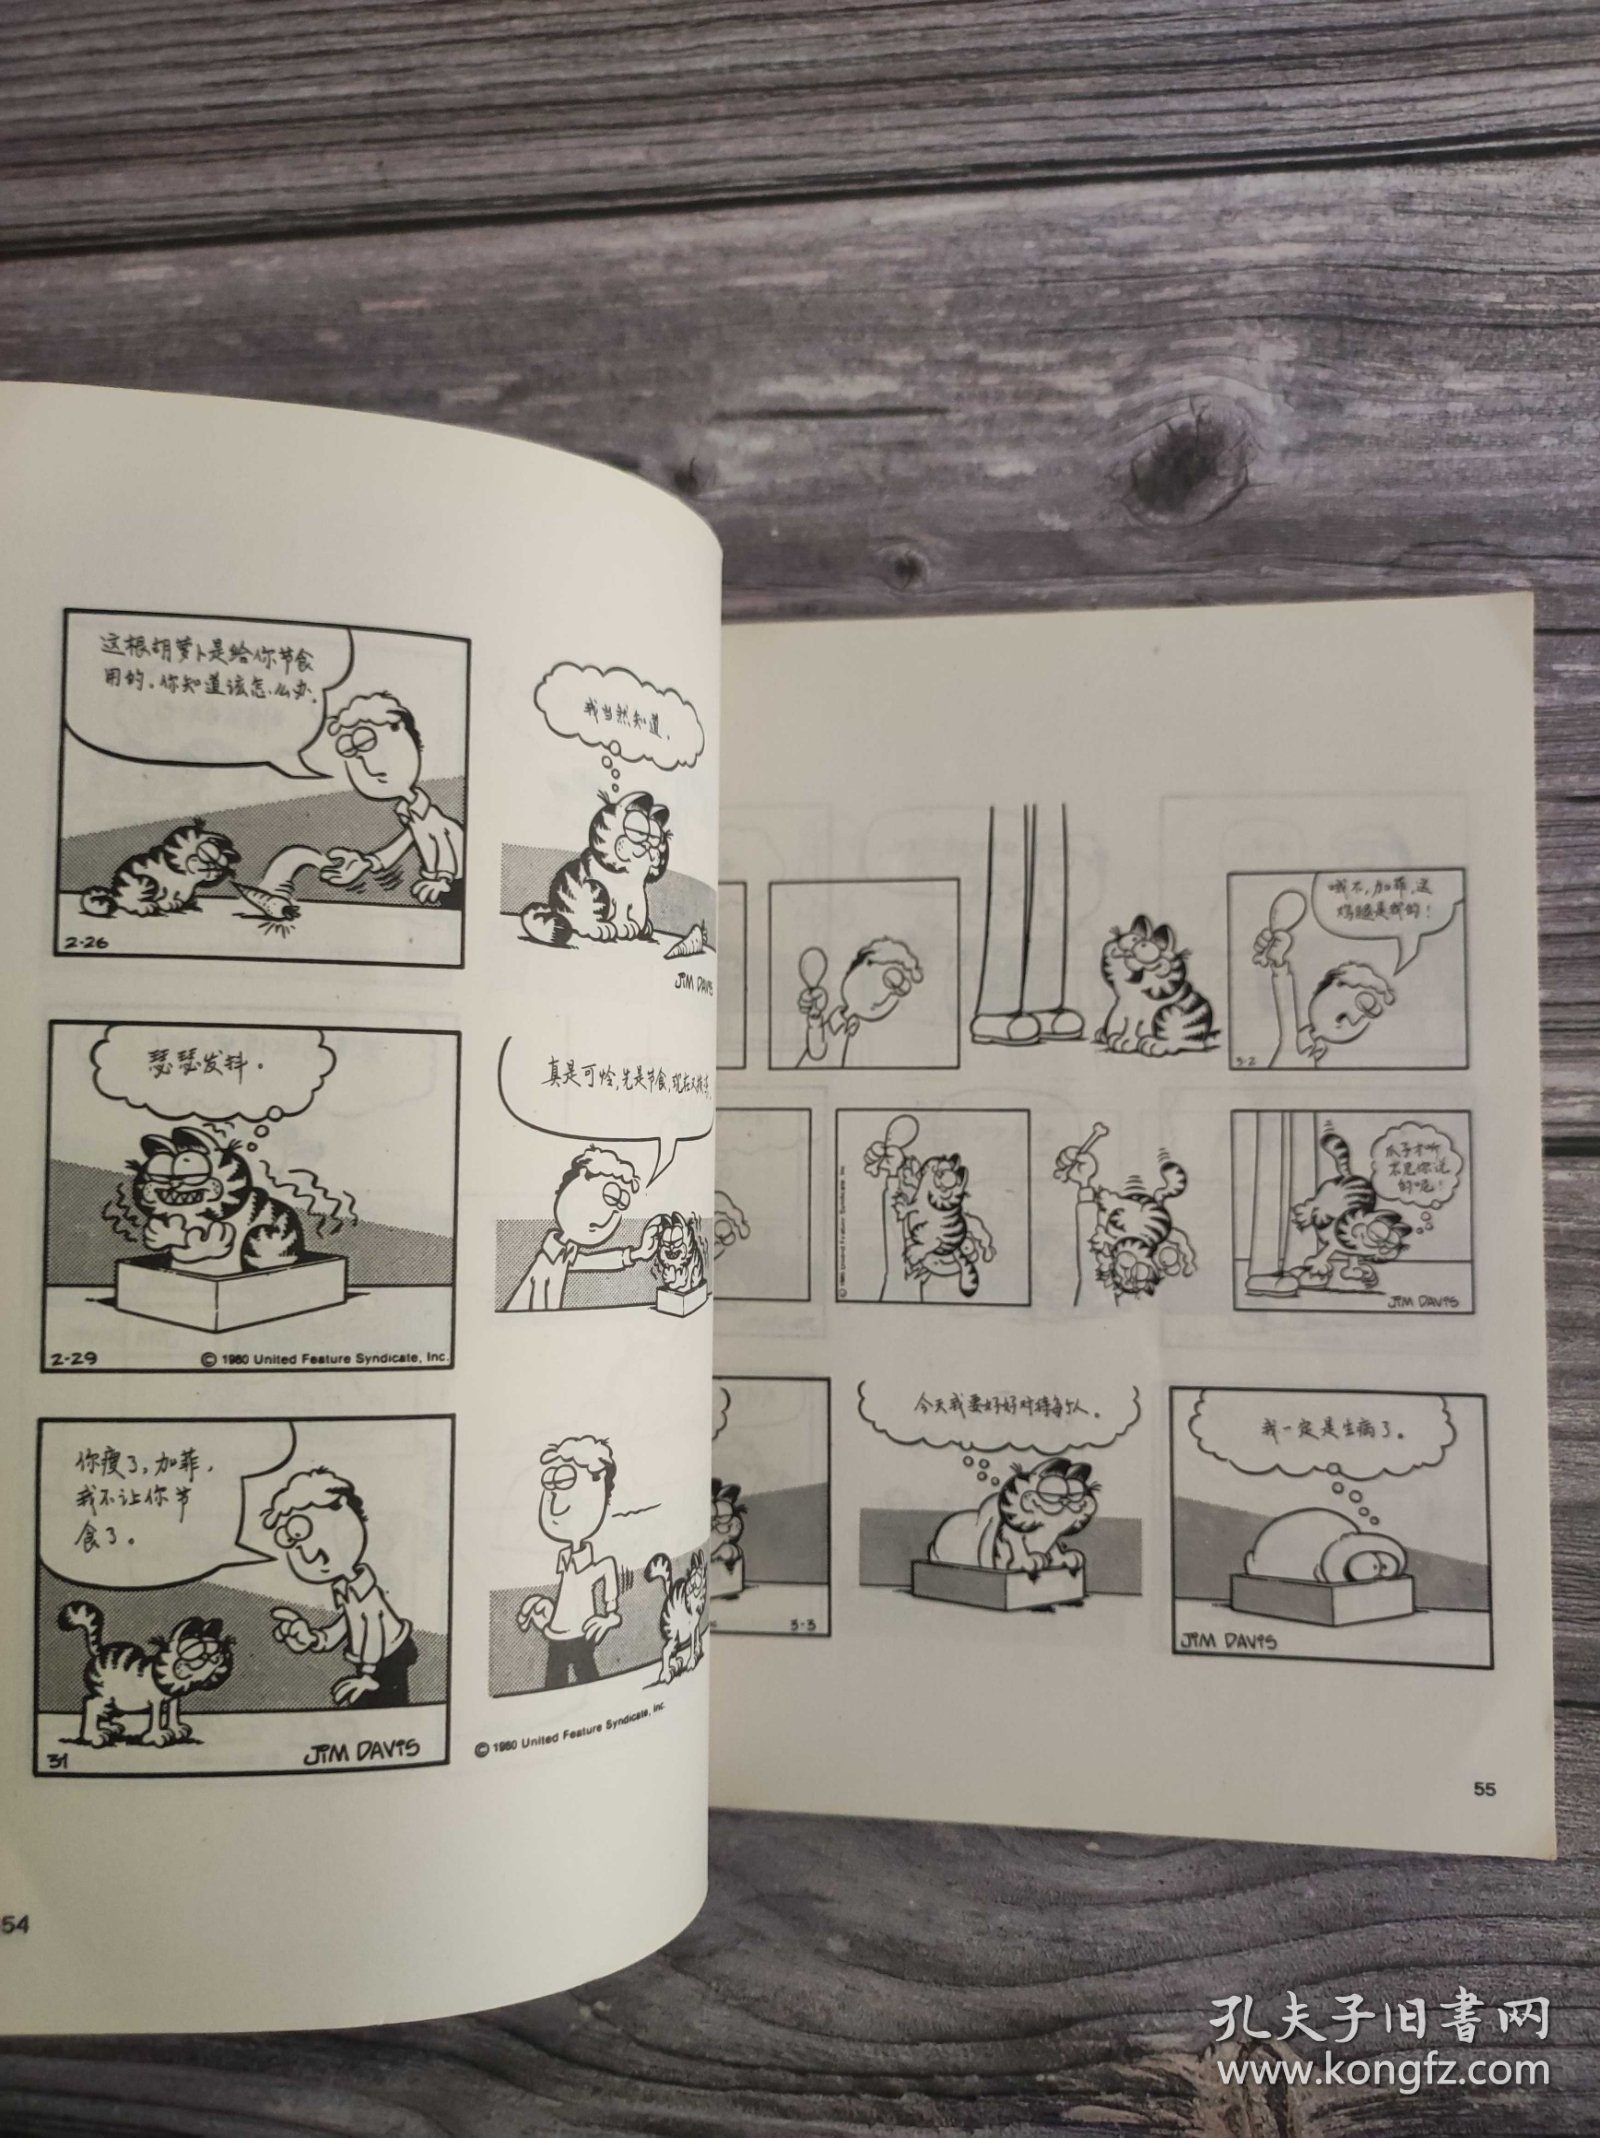 生活·爱情·幽默 加菲猫 世界系列连环漫画名著丛书